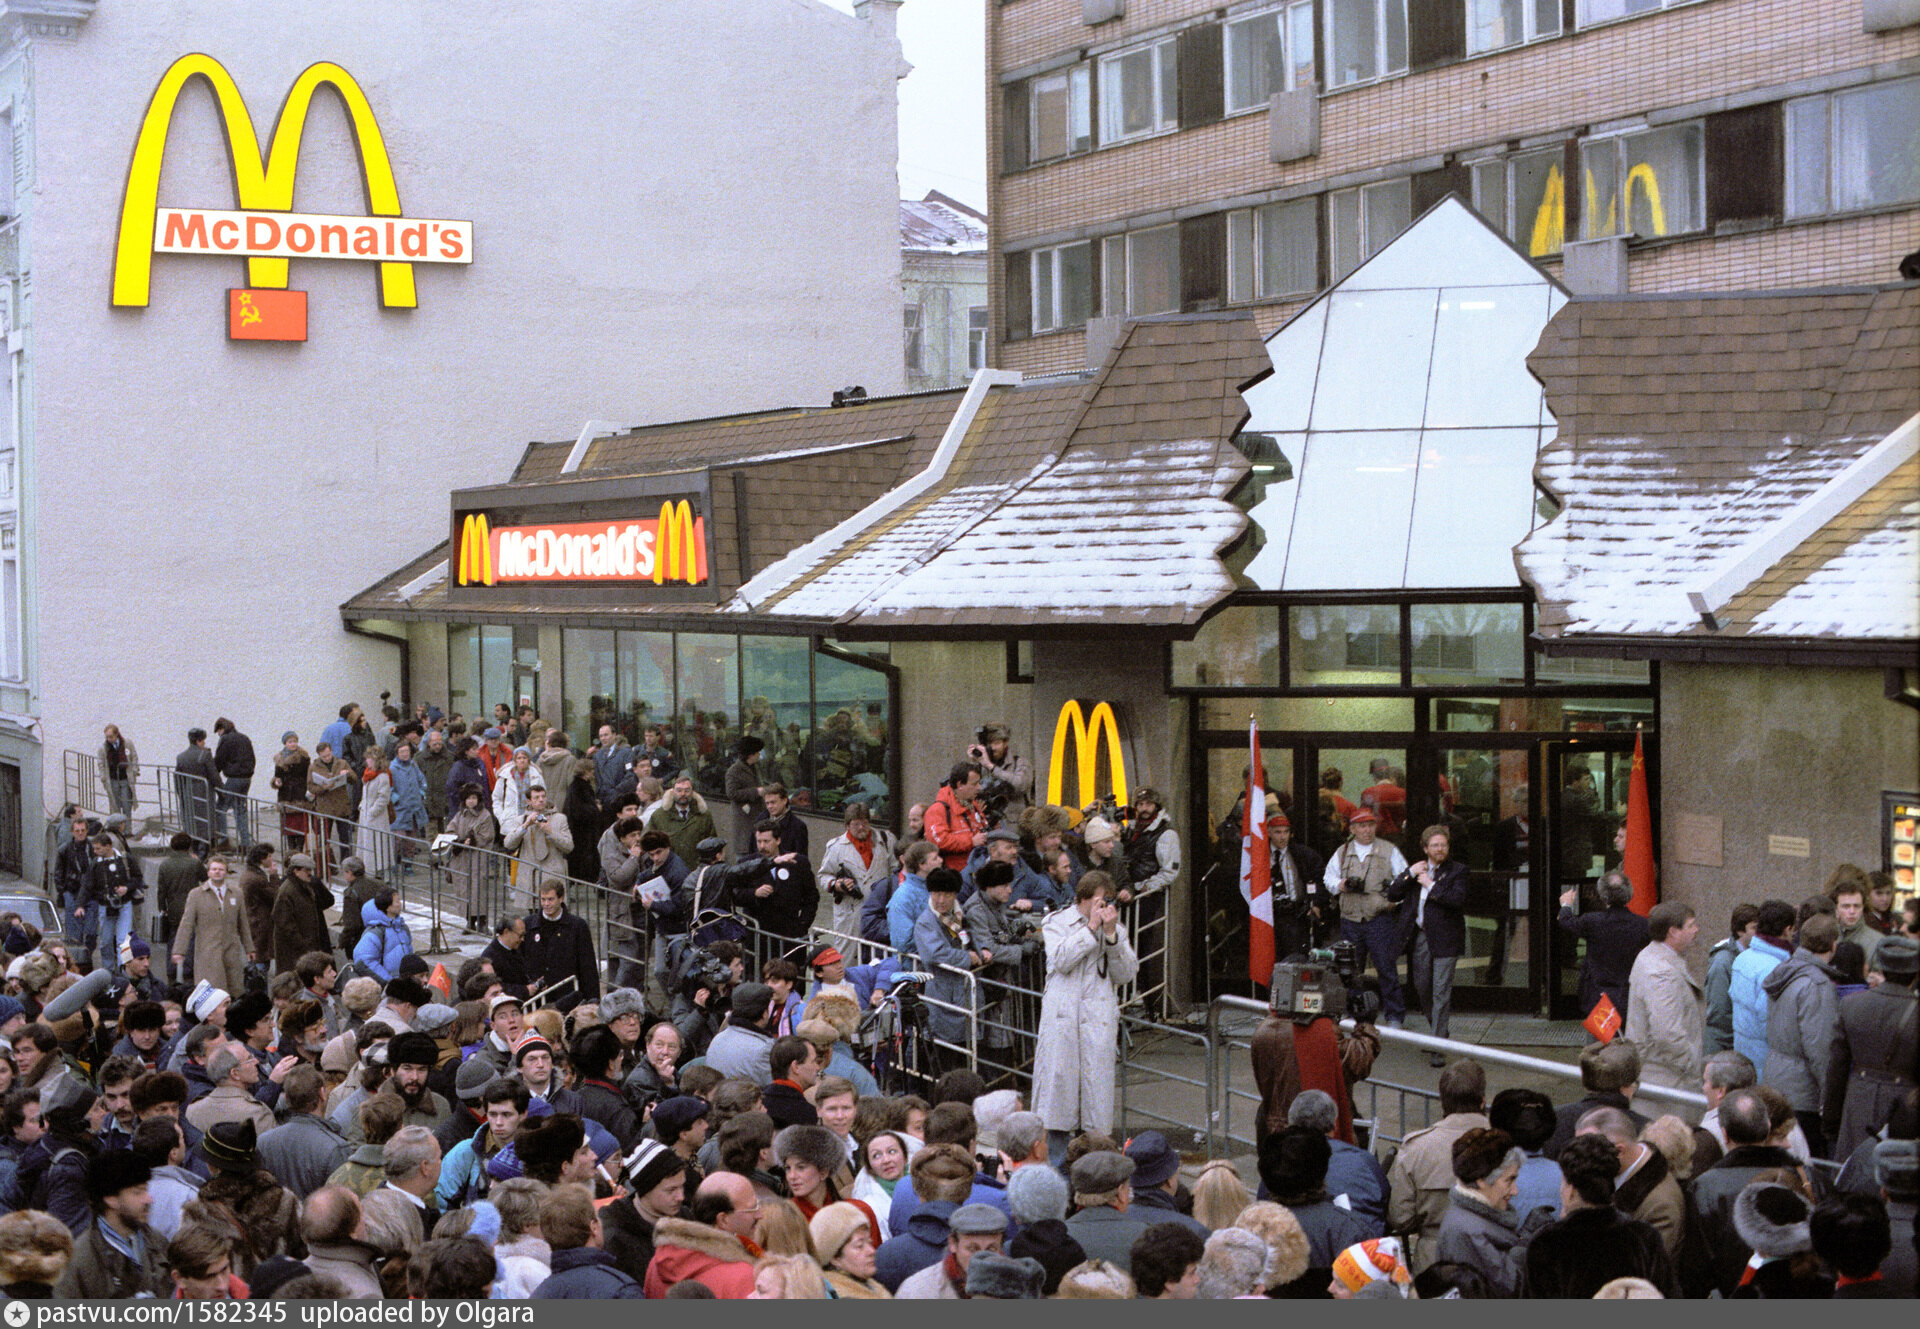 Какие макдональдсы открылись в москве. Первый Московский Макдоналдс 1990. Открытие первого Макдональдса в Москве в 1990 году. Очередь в макдональдс 1990 на Пушкинской. Очередь в макдональдс 1990 Москва.